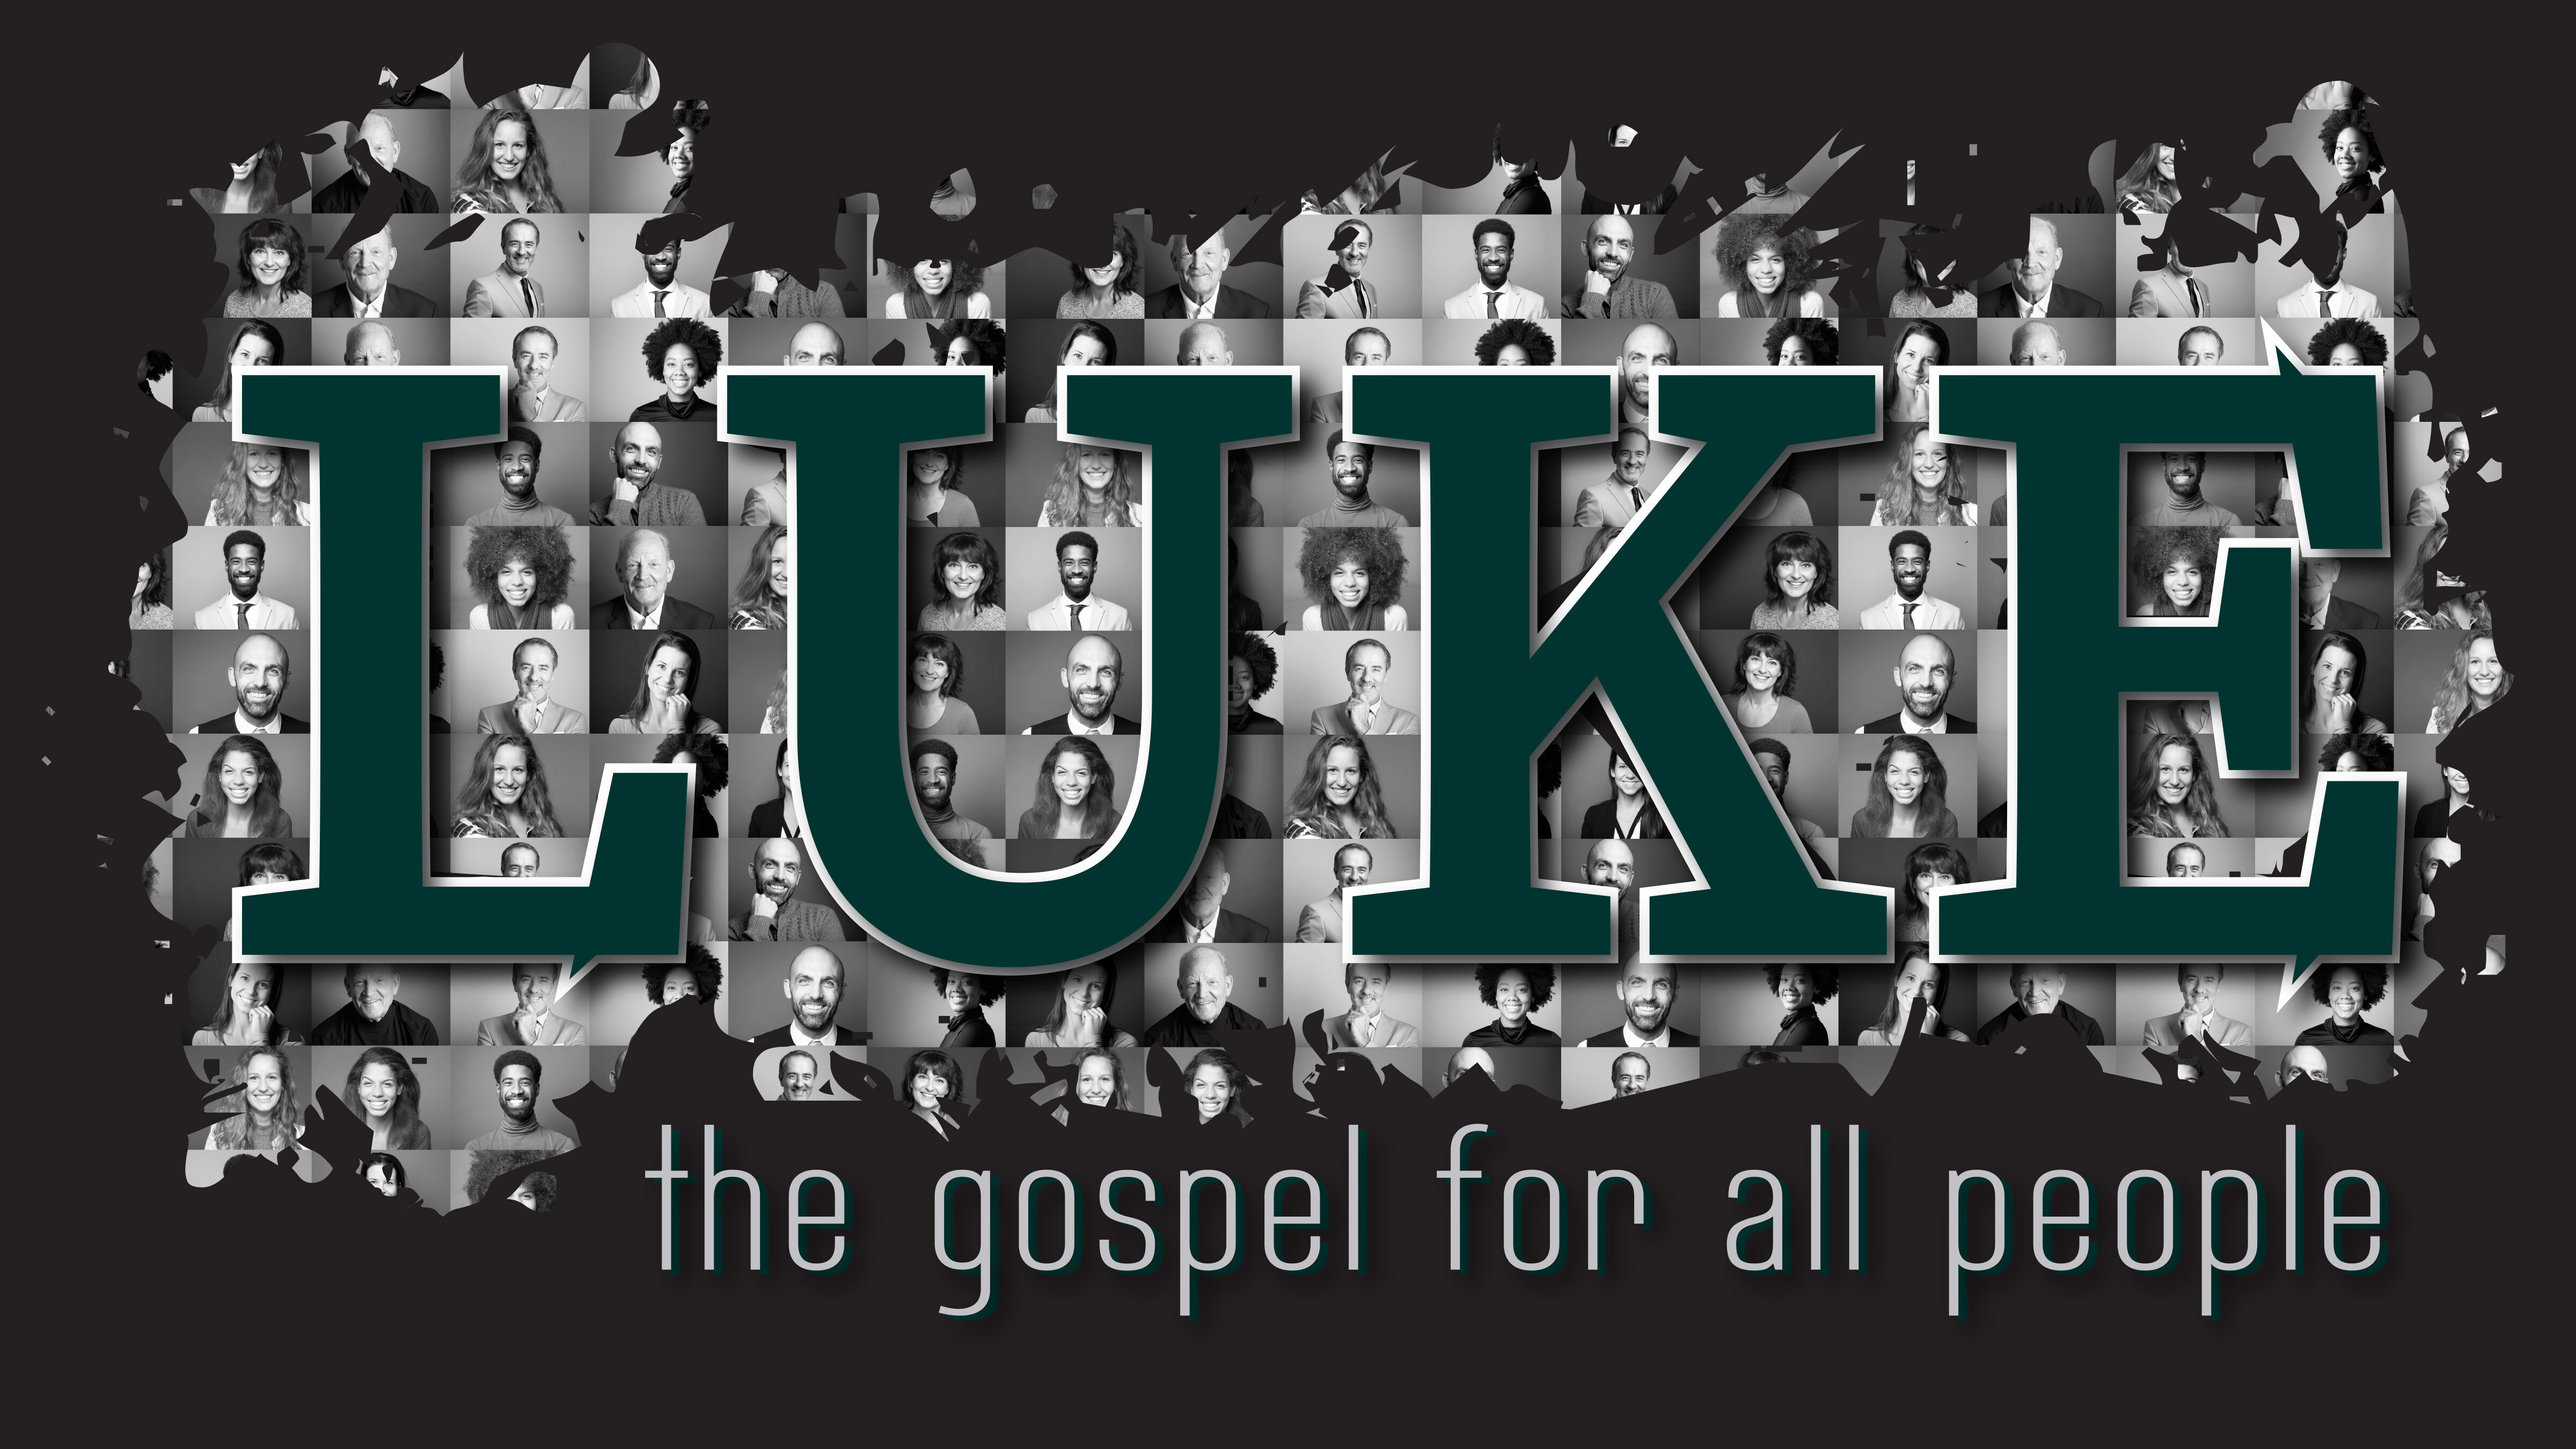 Luke: The Gospel for All People